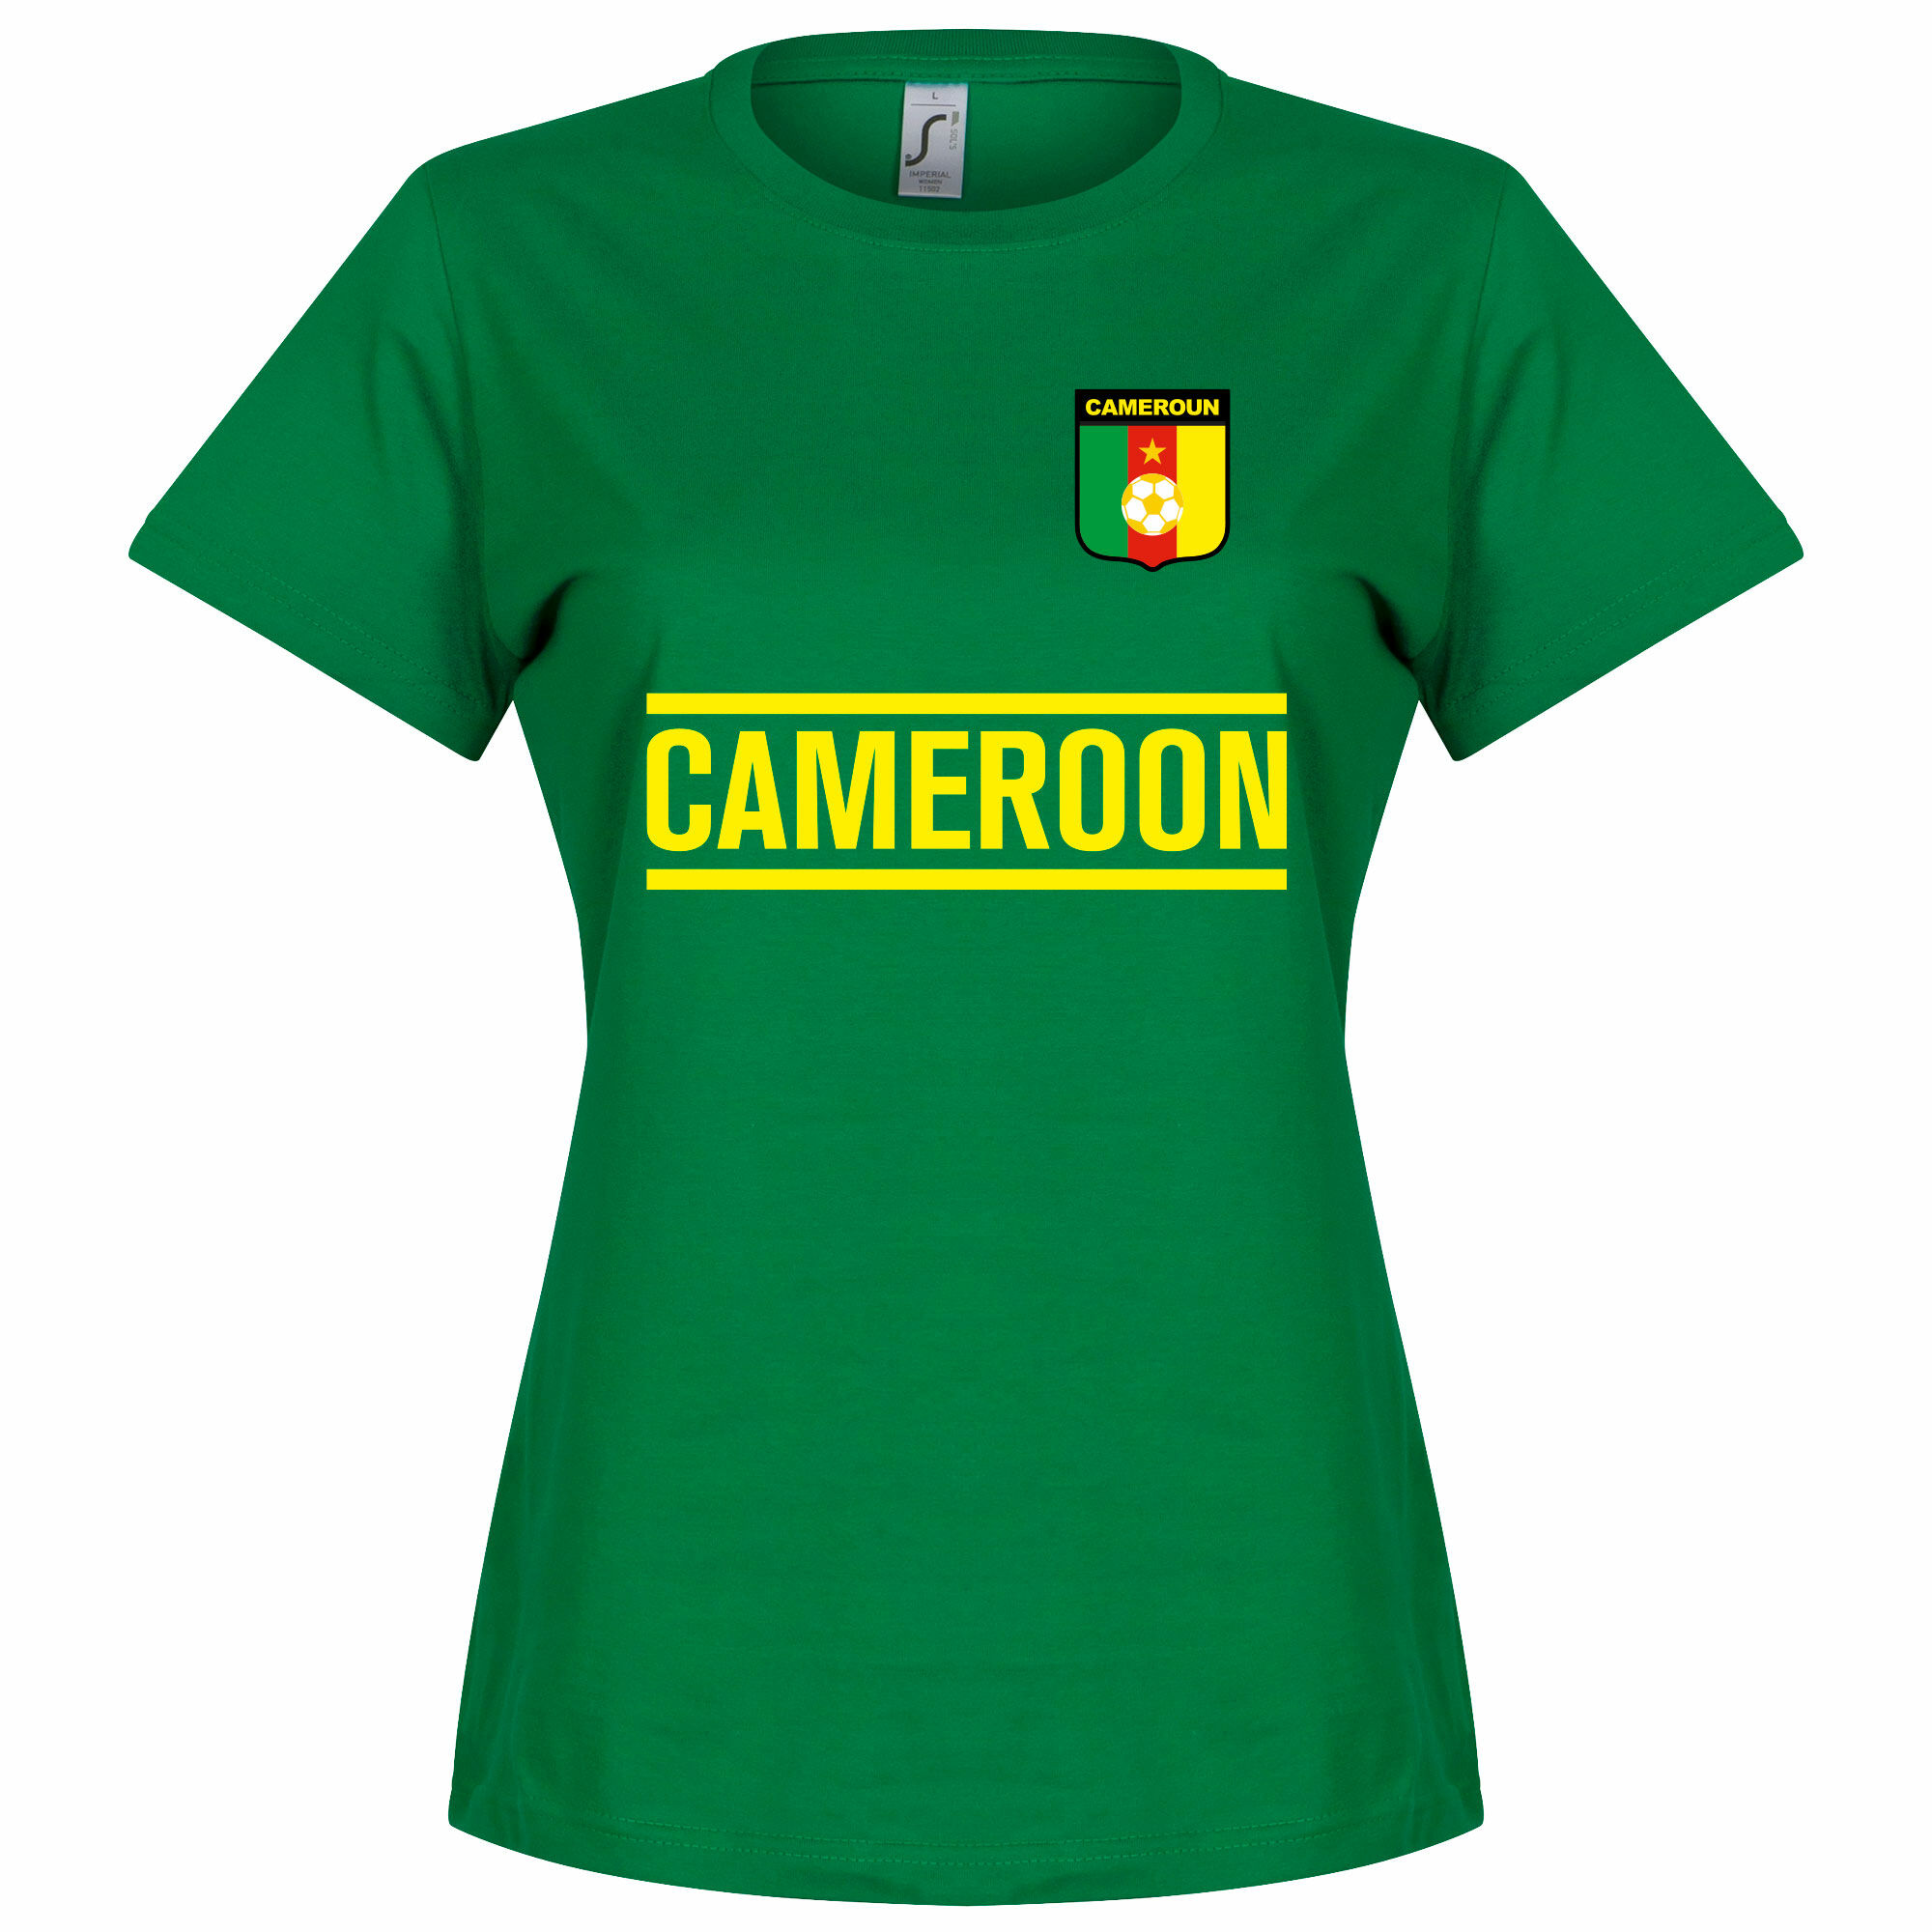 Kamerun - Tričko dámské - zelené